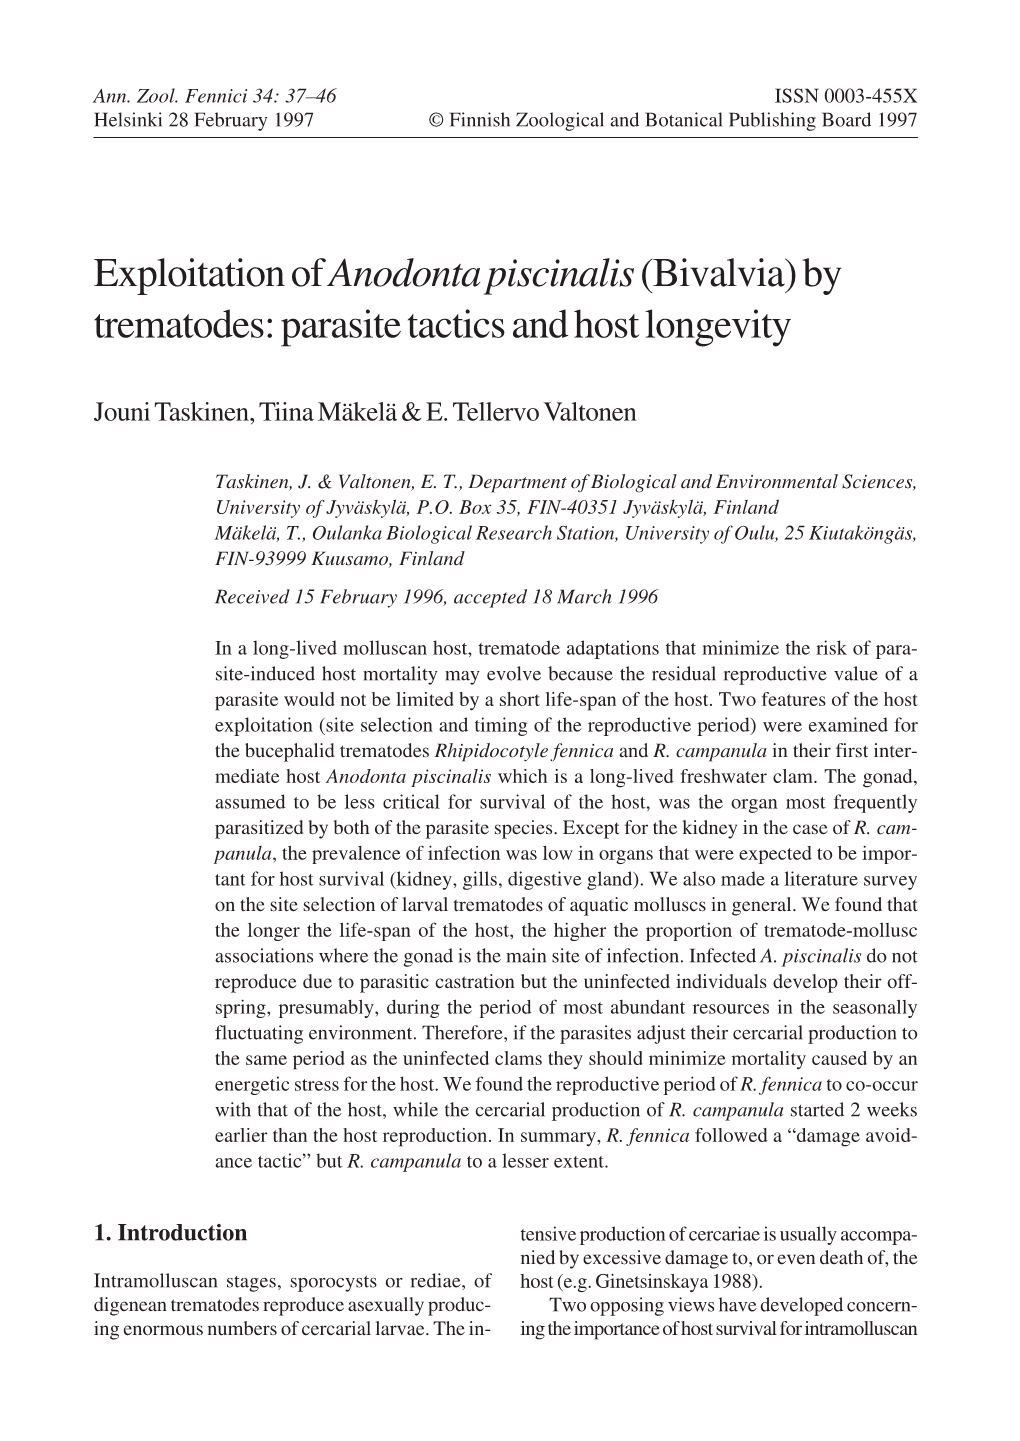 Exploitation of Anodonta Piscinalis (Bivalvia) by Trematodes: Parasite Tactics and Host Longevity